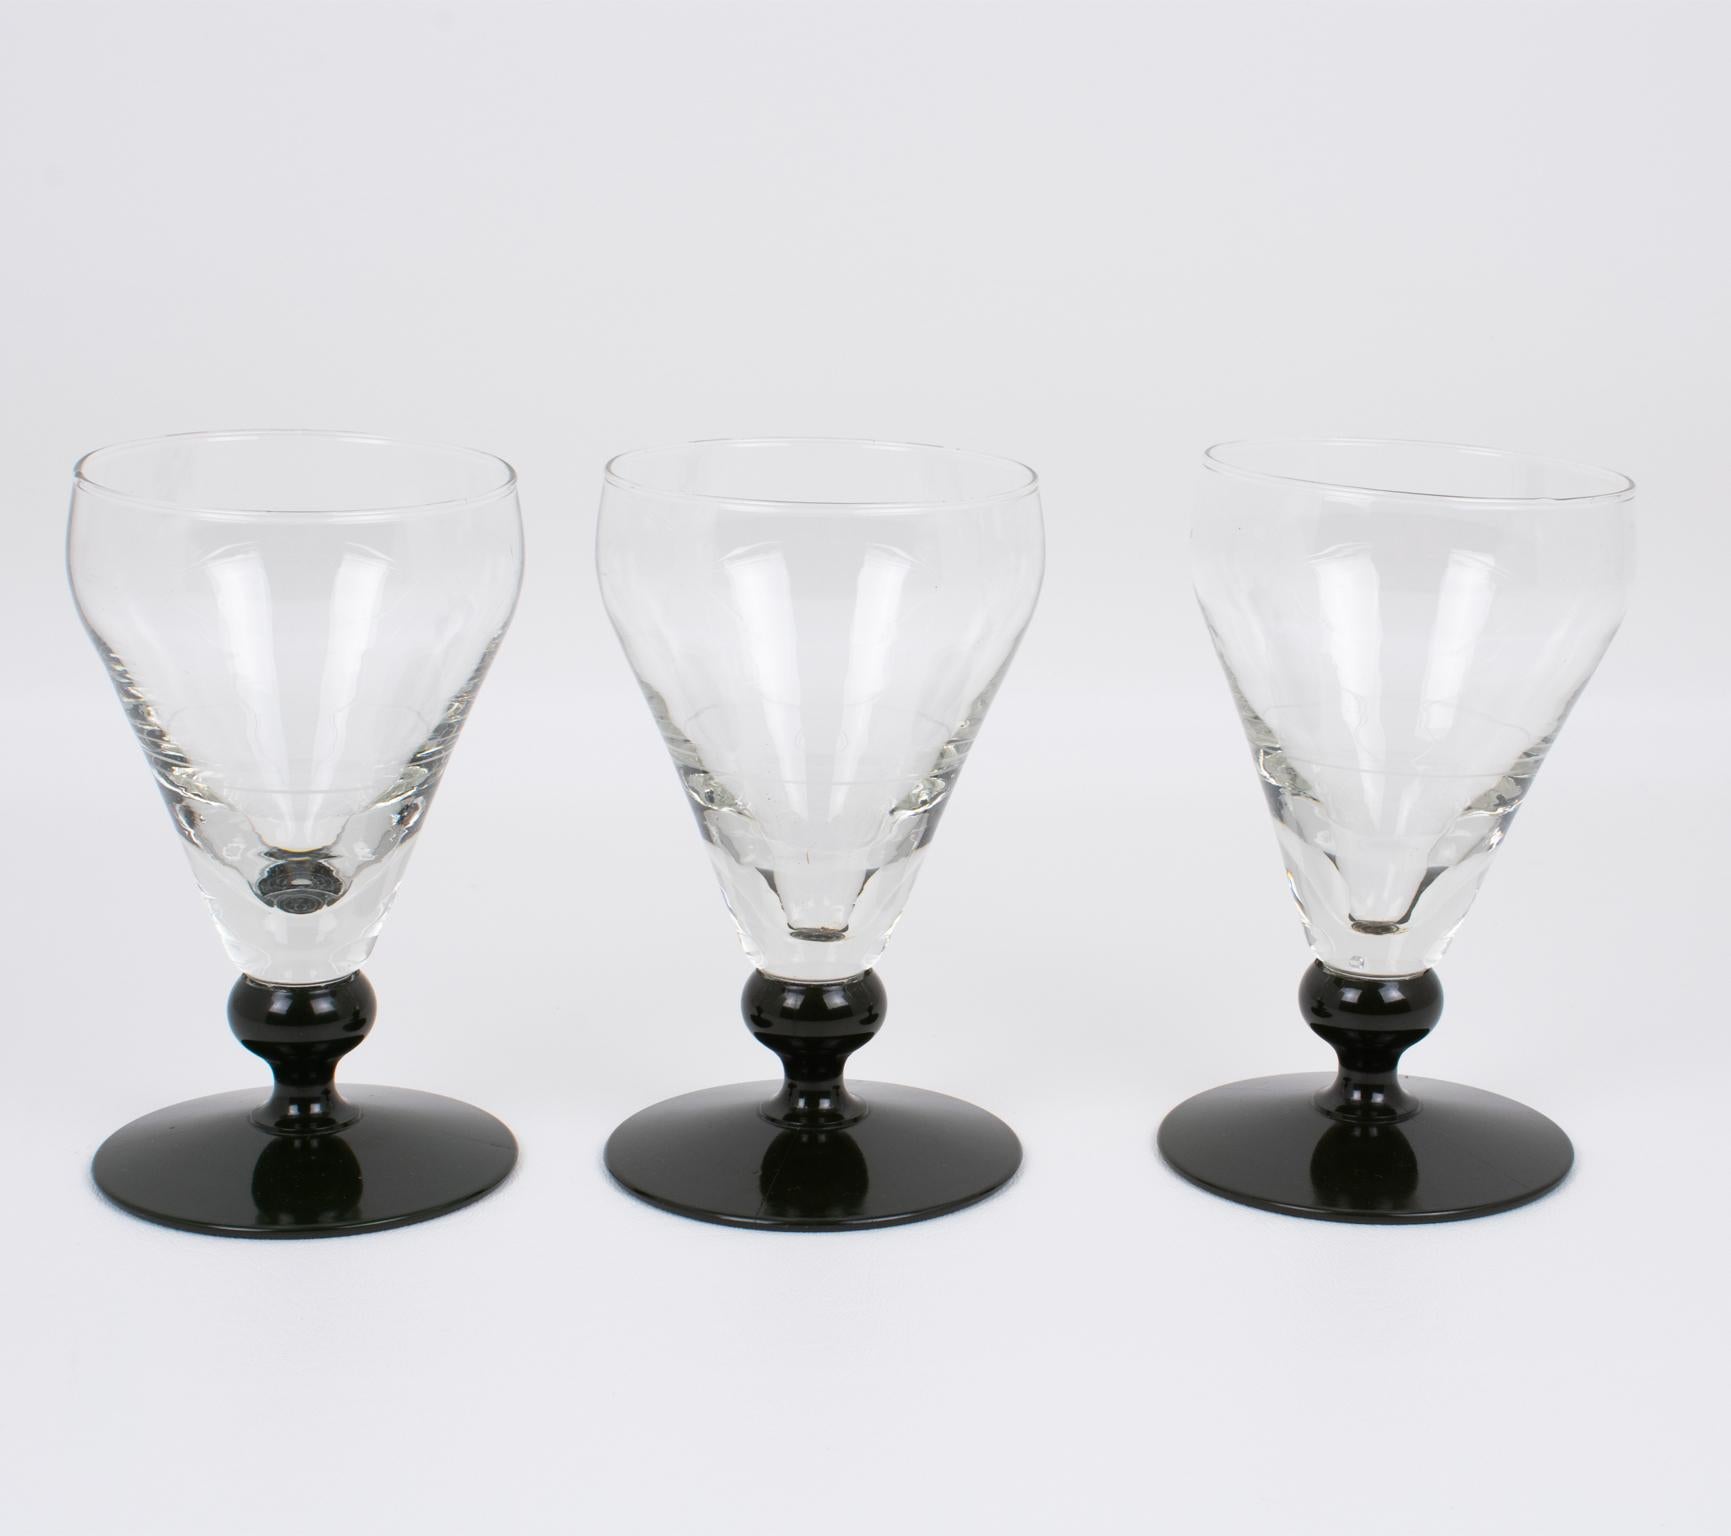 Ein authentischer Satz von drei französischen Absinthgläsern, hergestellt von Franckhauser in Lyon um 1910. 
Diese schweren Gläser wurden in französischen Bistros, Bars oder Cafés für das Ritual des Trinkens des süchtig machenden Getränks namens 